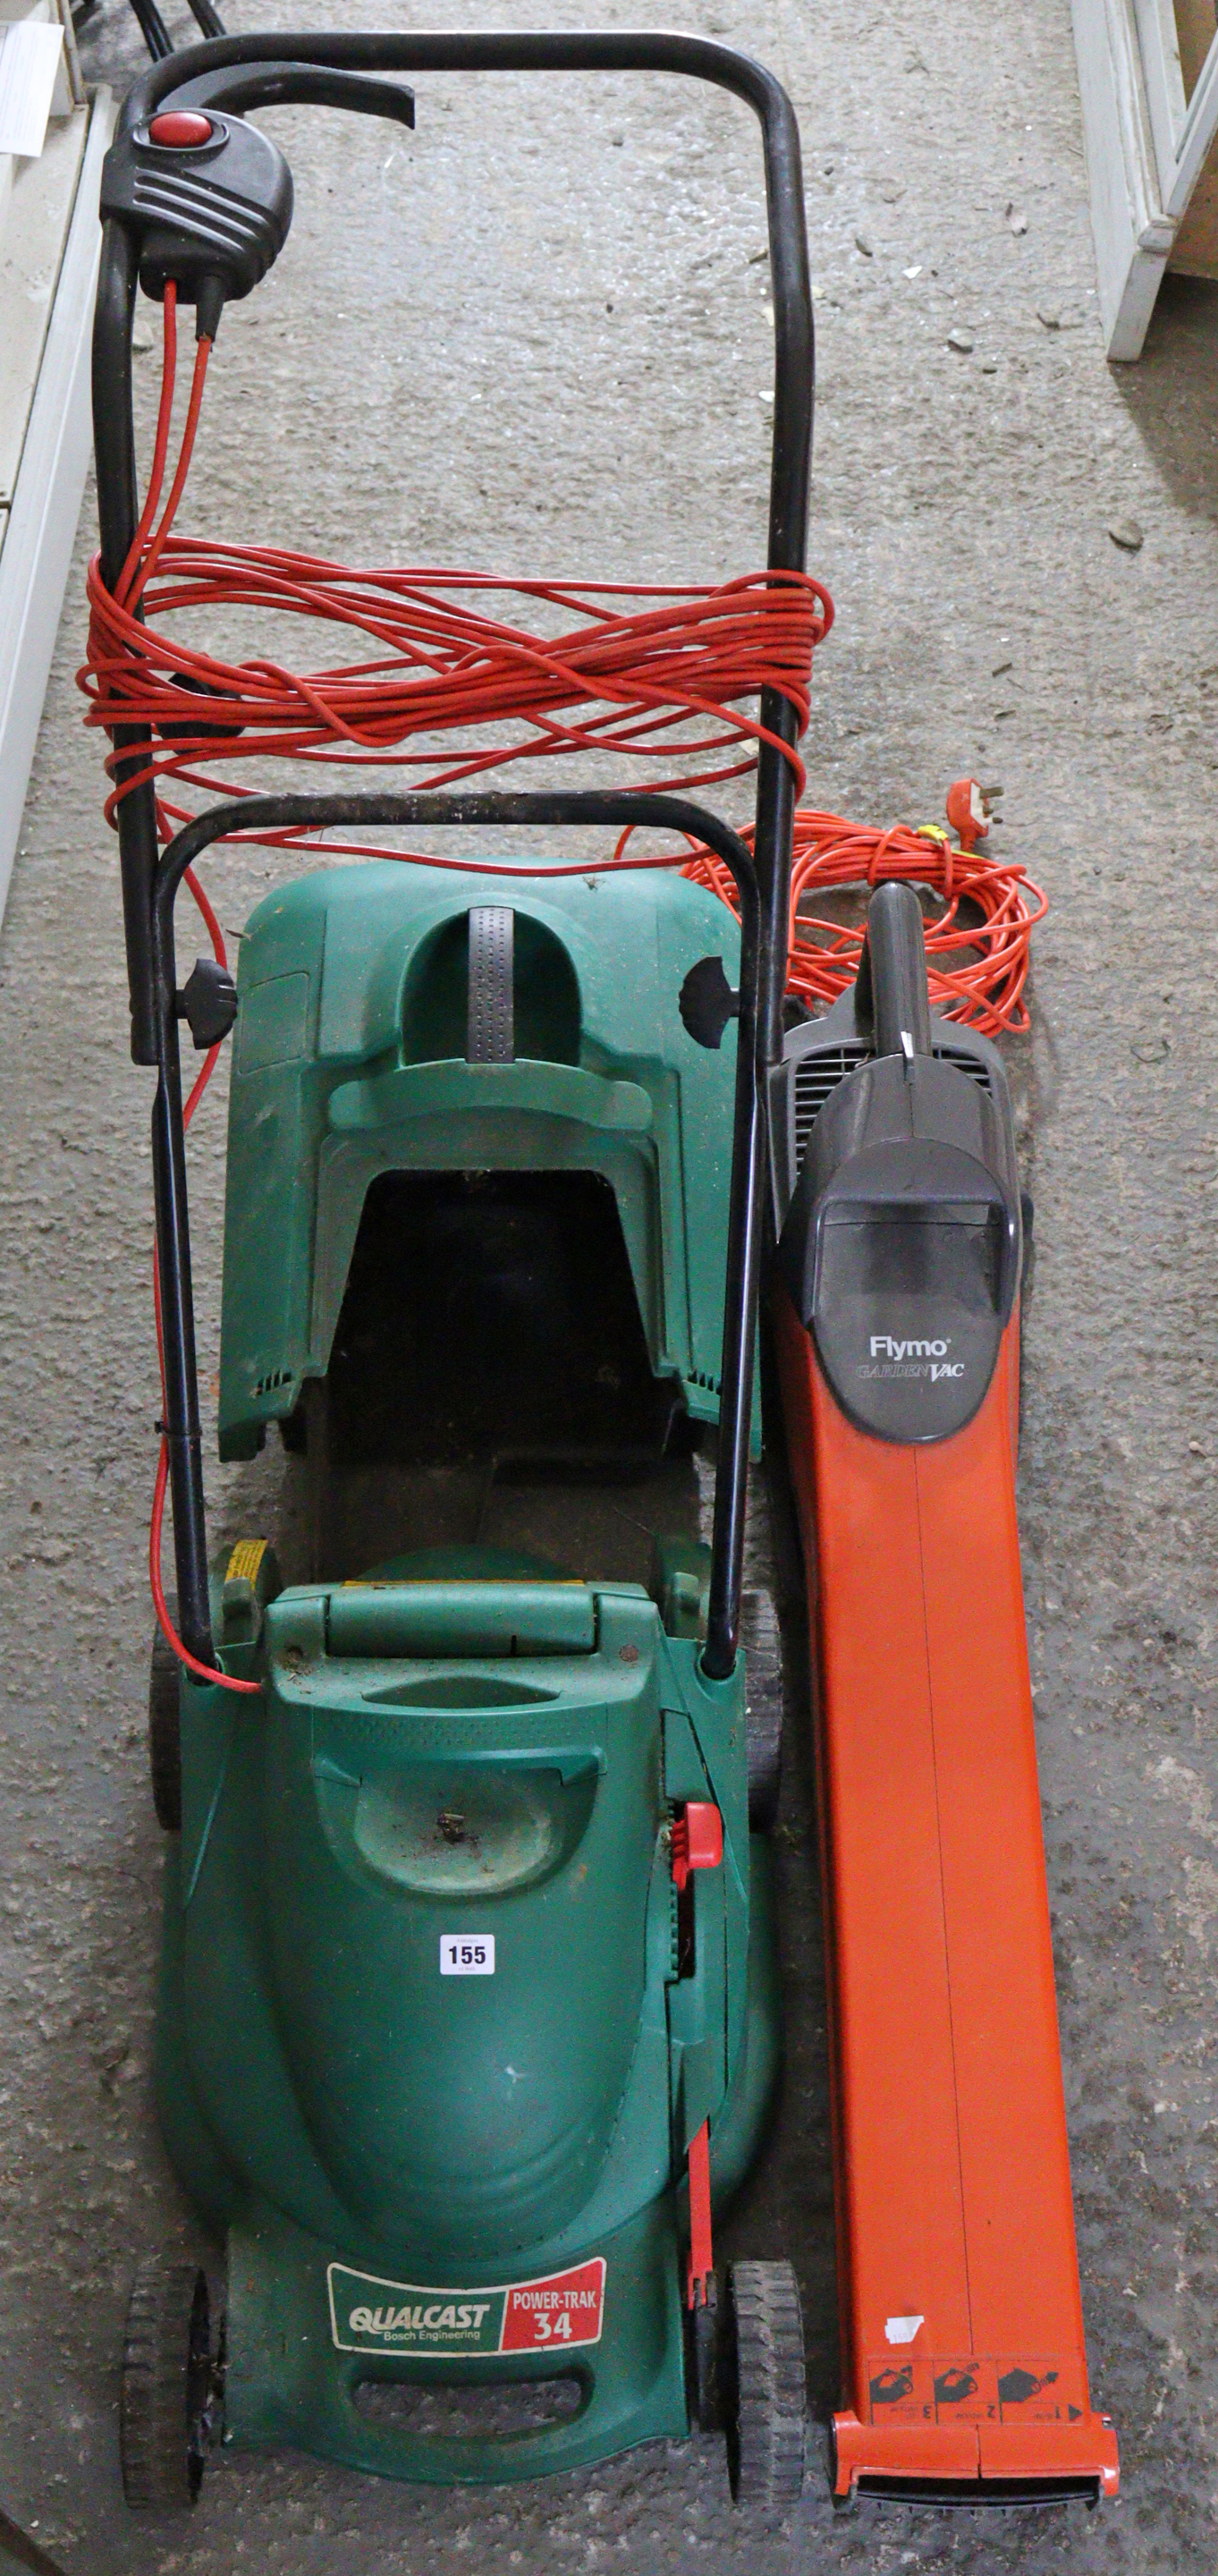 A Qualcast “Power Trak 34” lawnmower, & a Flymo garden Vac.